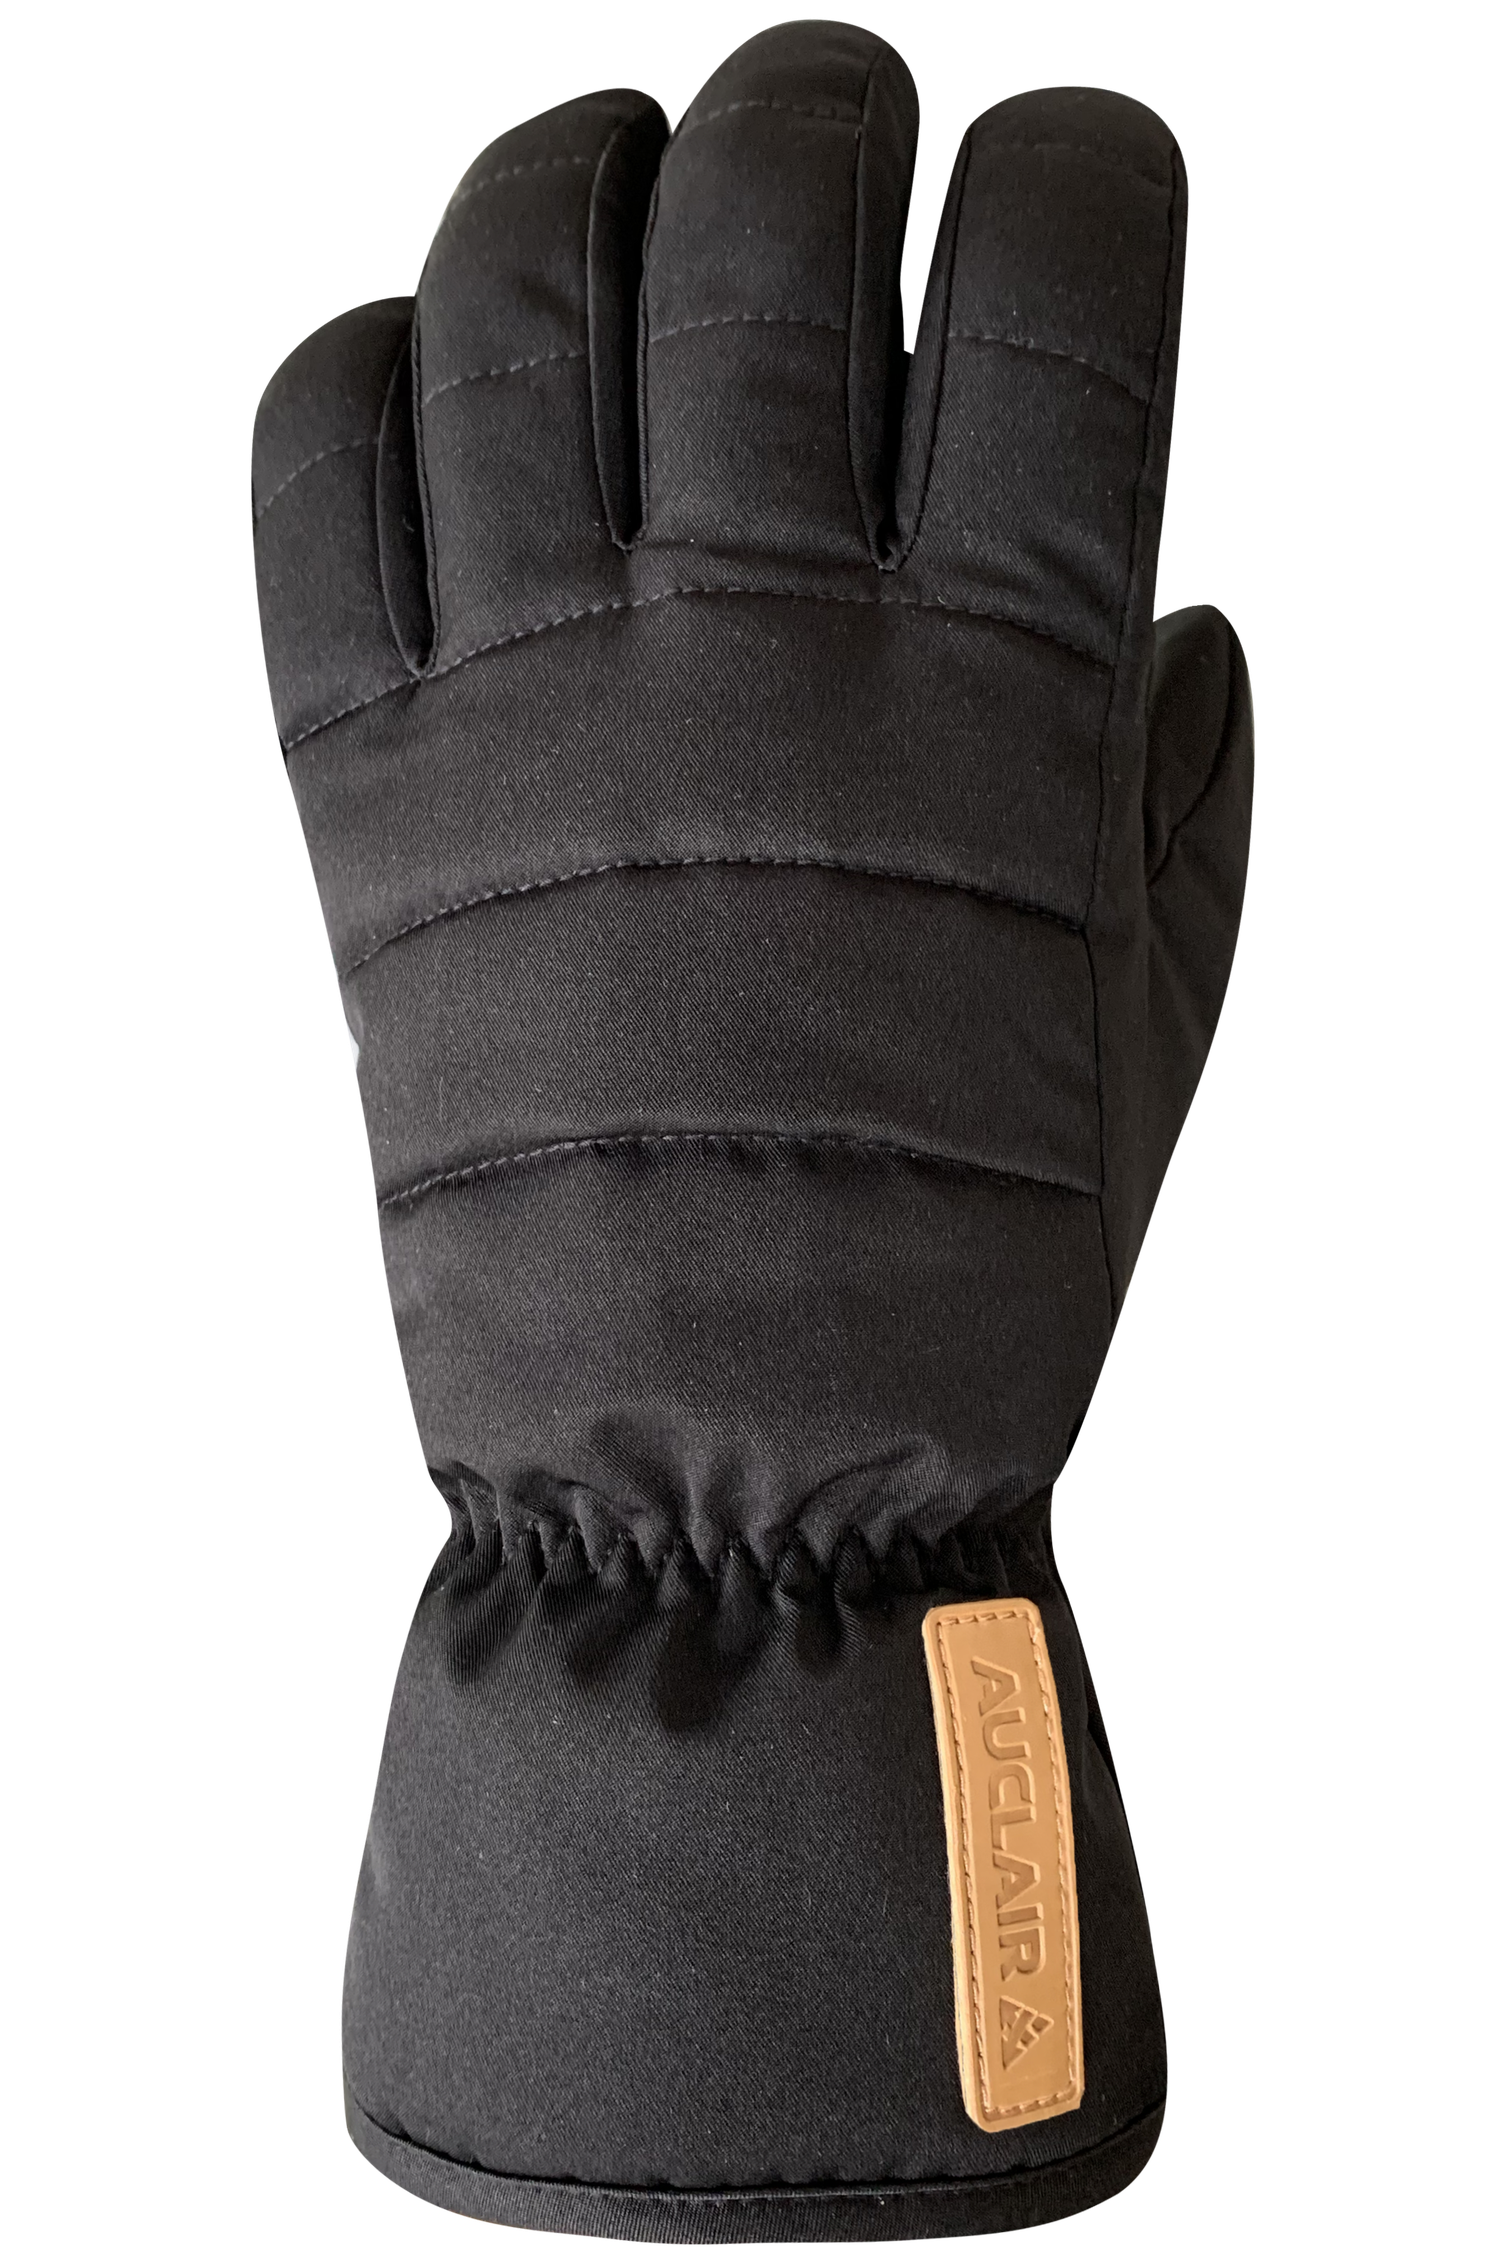 Retro Gloves - Women, Black/Black